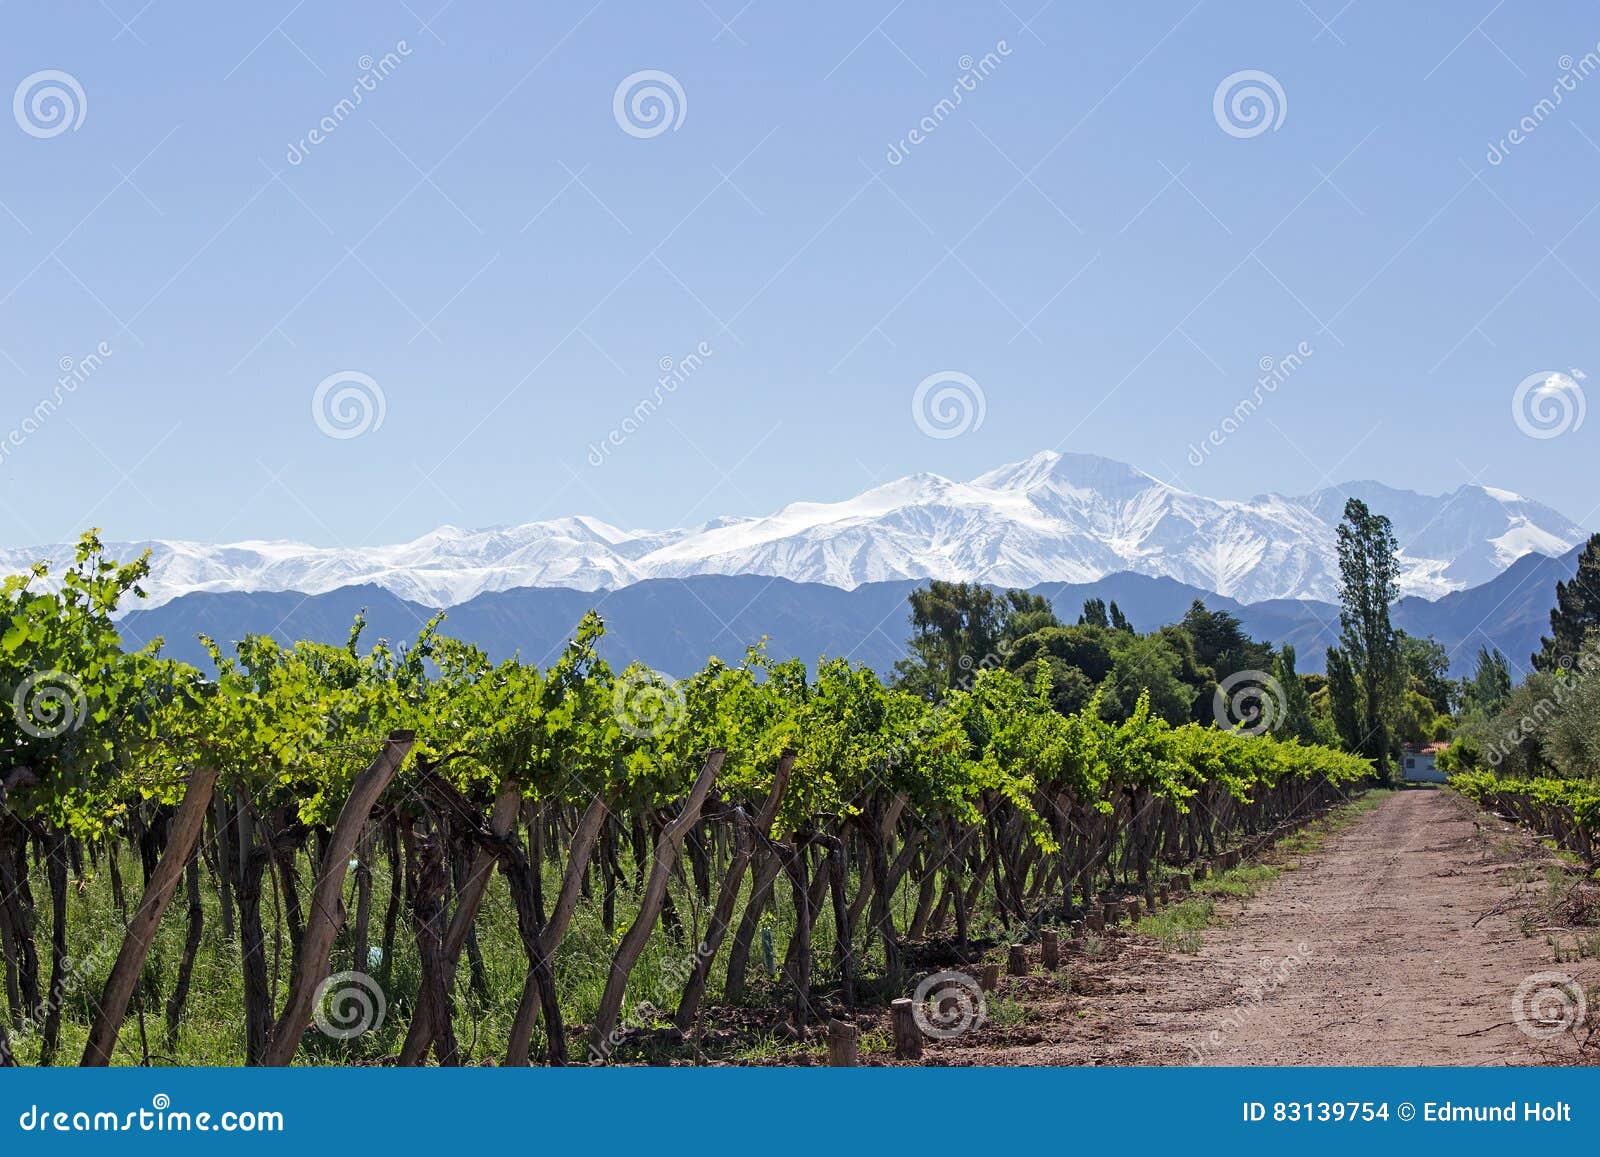 andes & vineyard, lujan de cuyo, argentina